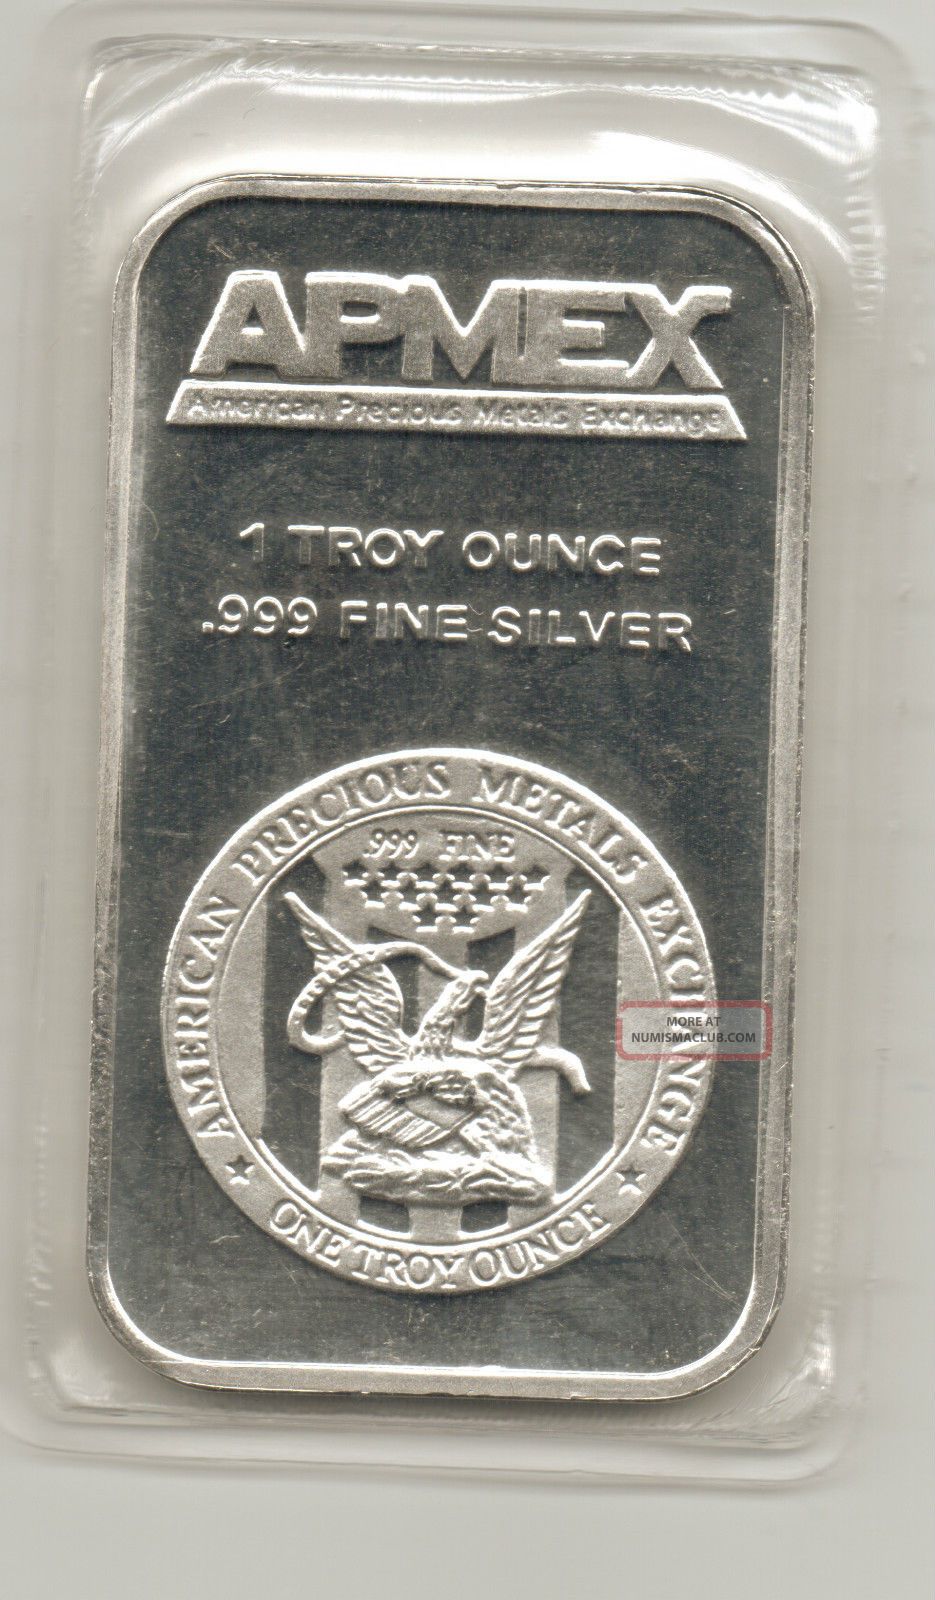 Apmex Traditional Silver Bar 1 Troy Oz. 999 Fine Silver Bar